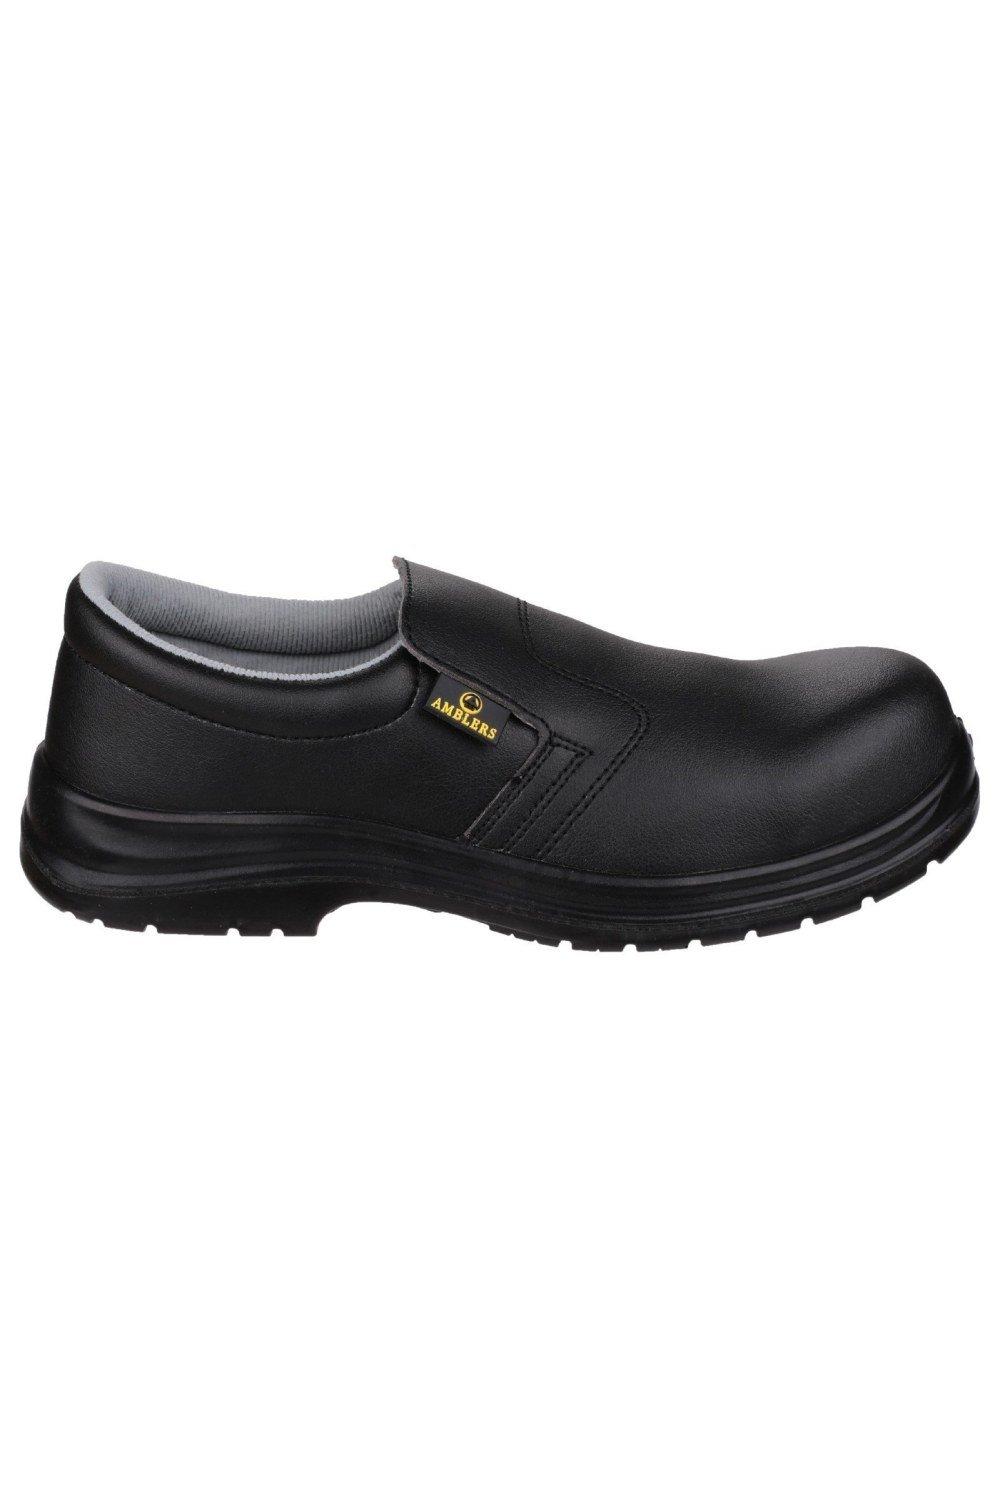 Защитная обувь без шнуровки FS661 Amblers, черный